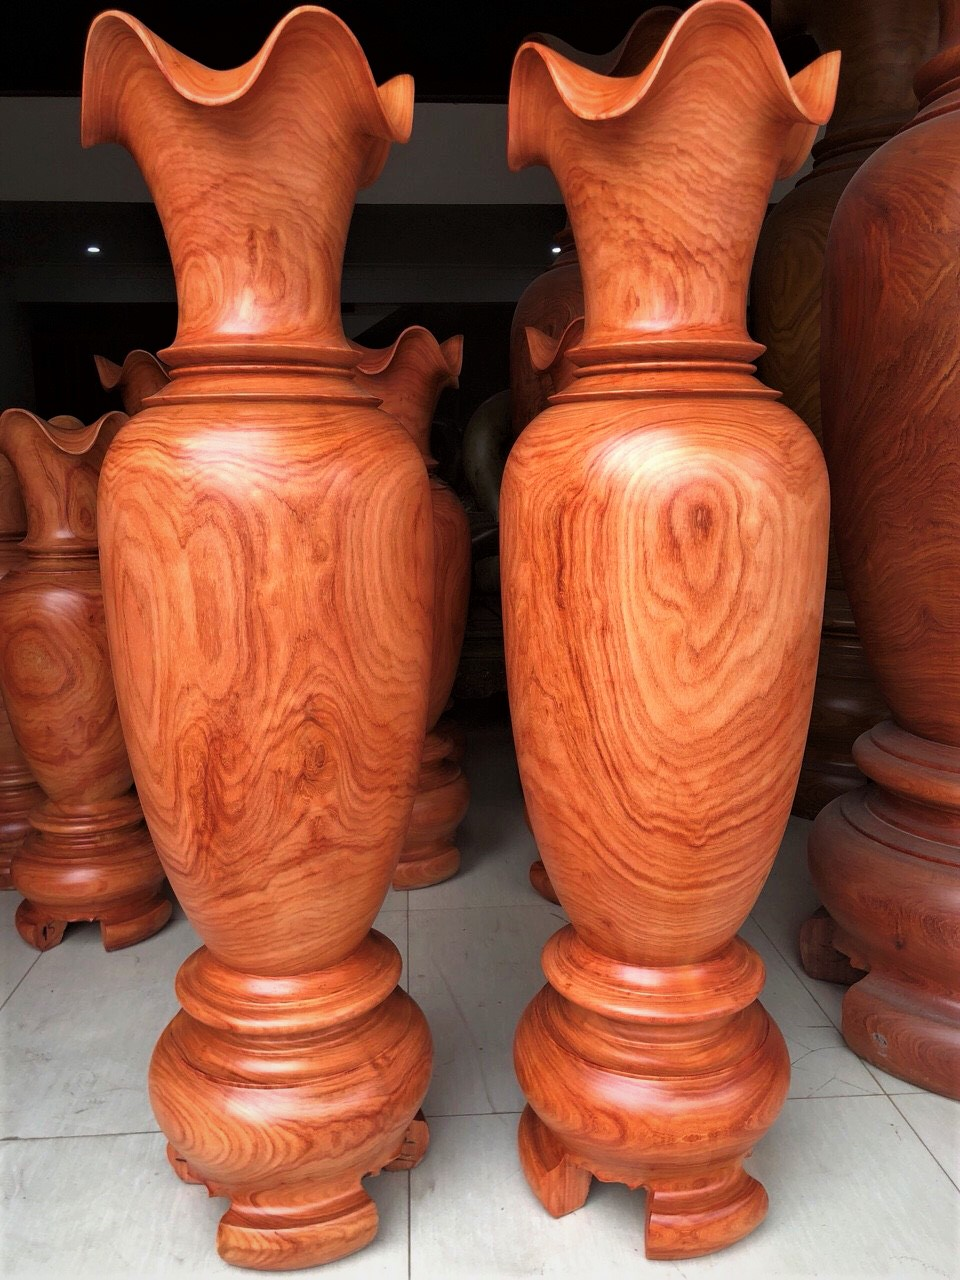 Sản phẩm chế tác từ gỗ hương có vẻ đẹp tự nhiên